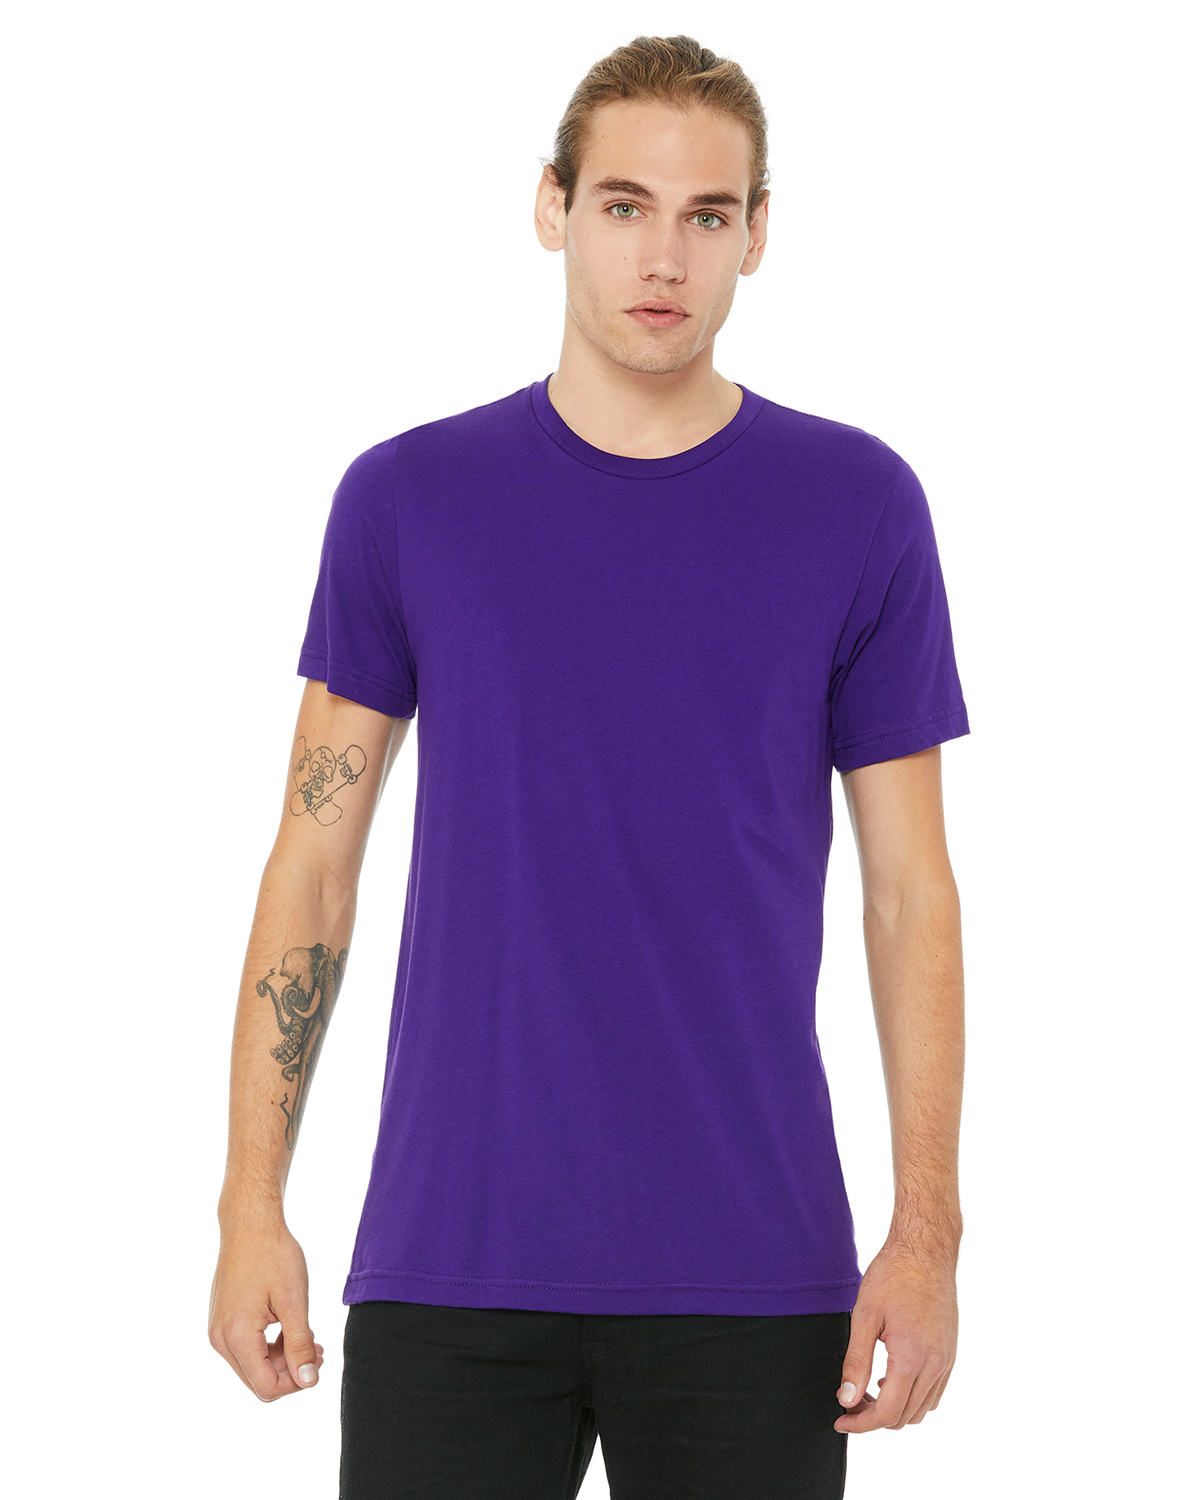 purple color jersey